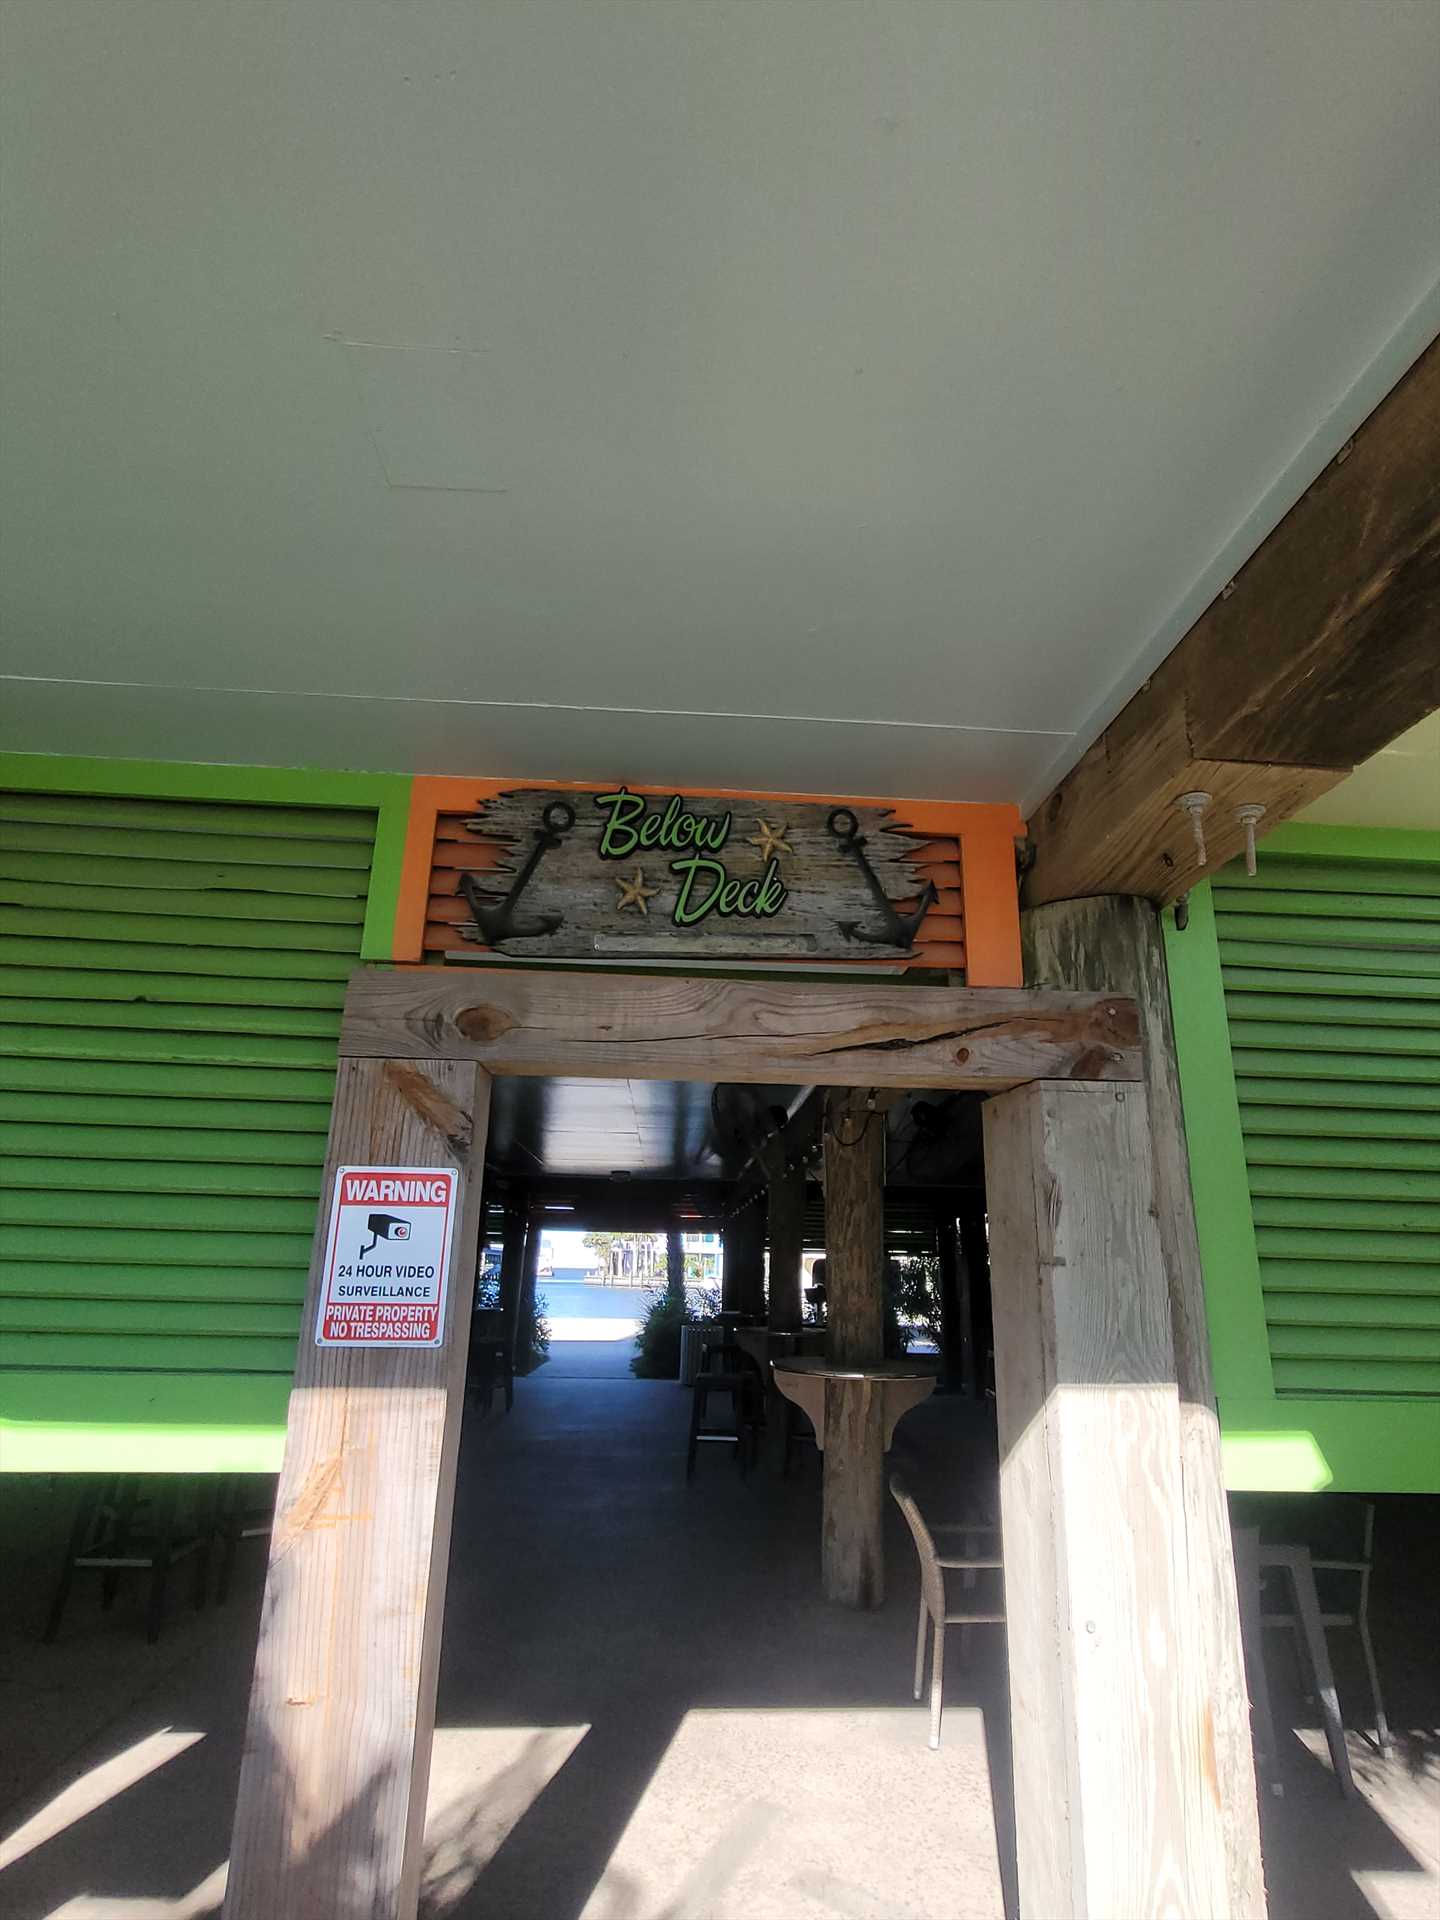 Below decxk bar entrance from street